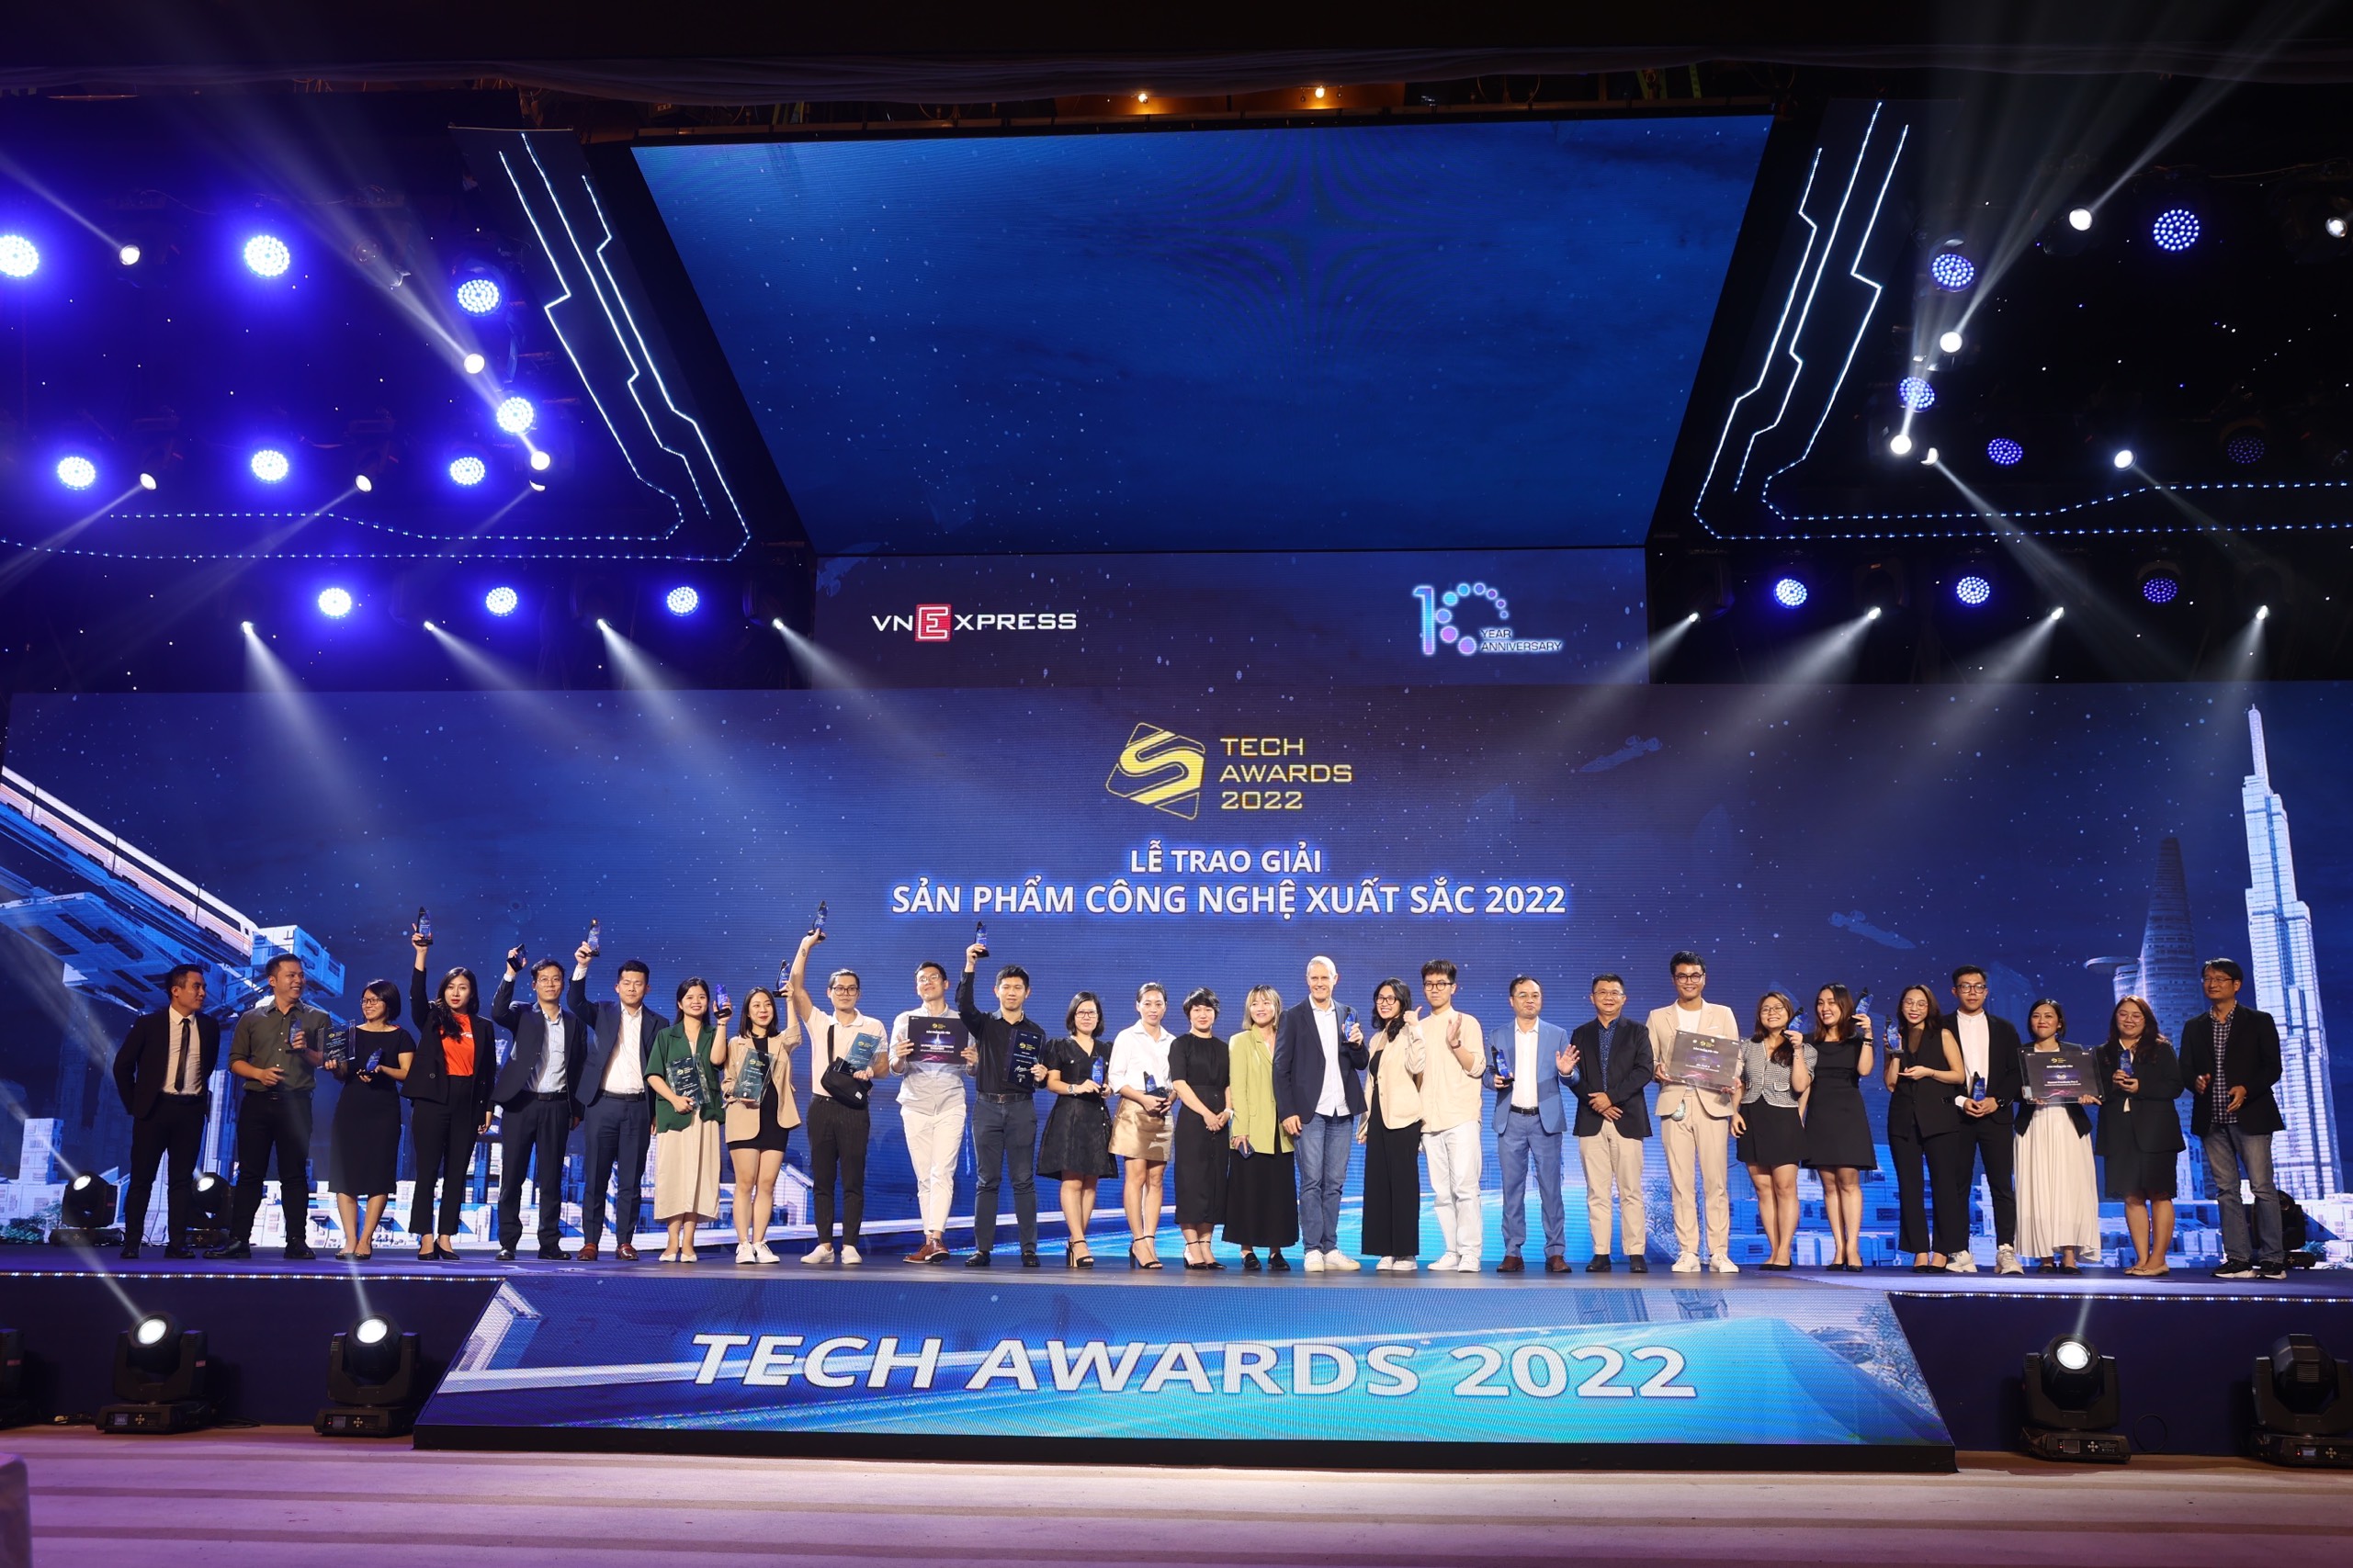 Tech Awards 2022 – Những sản phẩm công nghệ xuất sắc nhất năm 2022 đã lộ diện